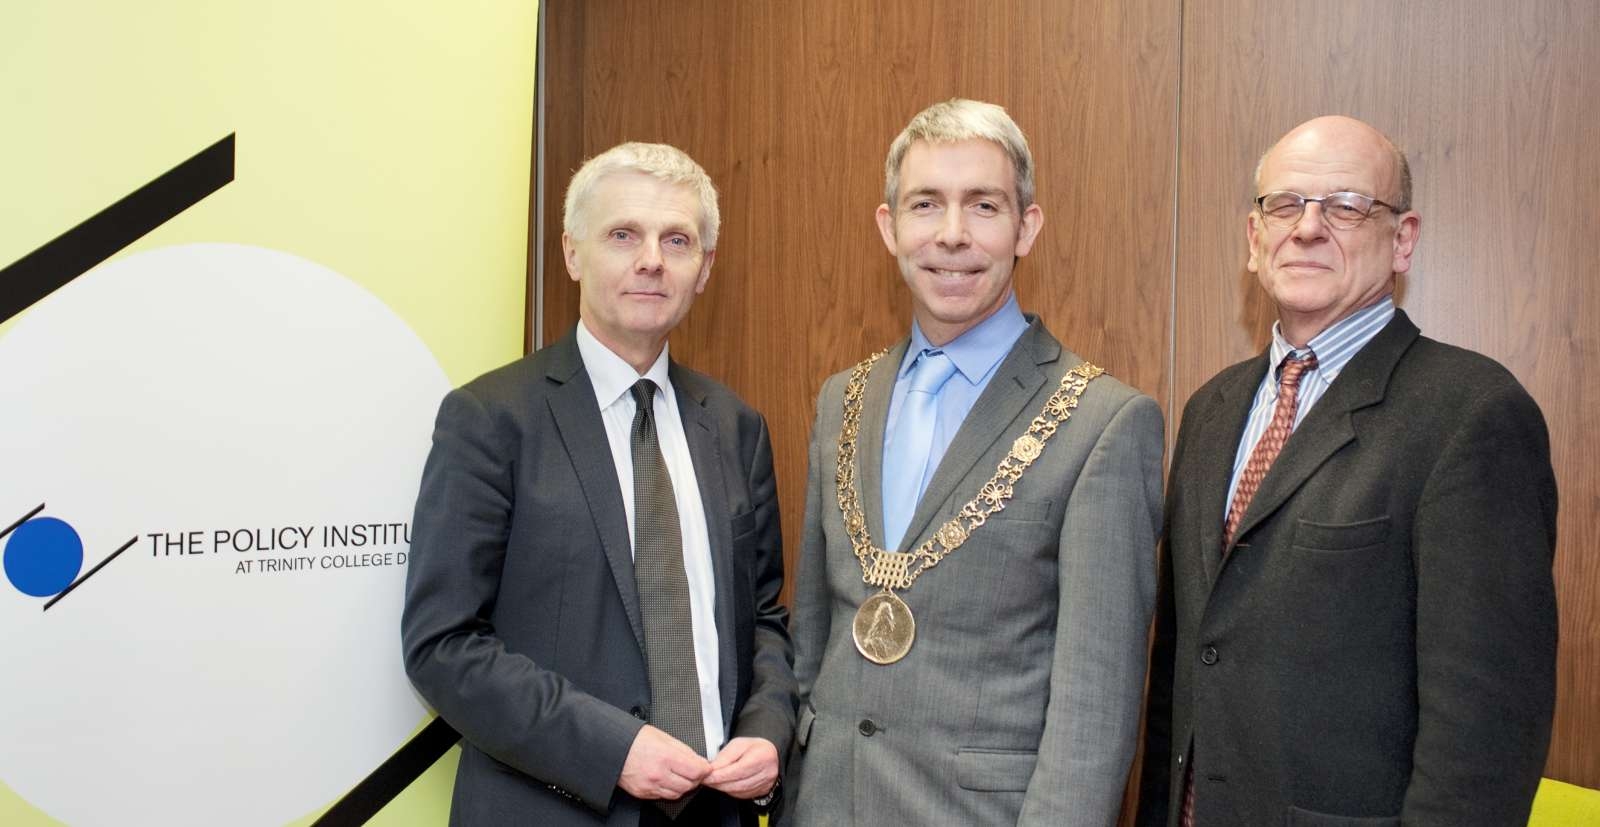 Lord Mayor, Tony Travers and James Wickham